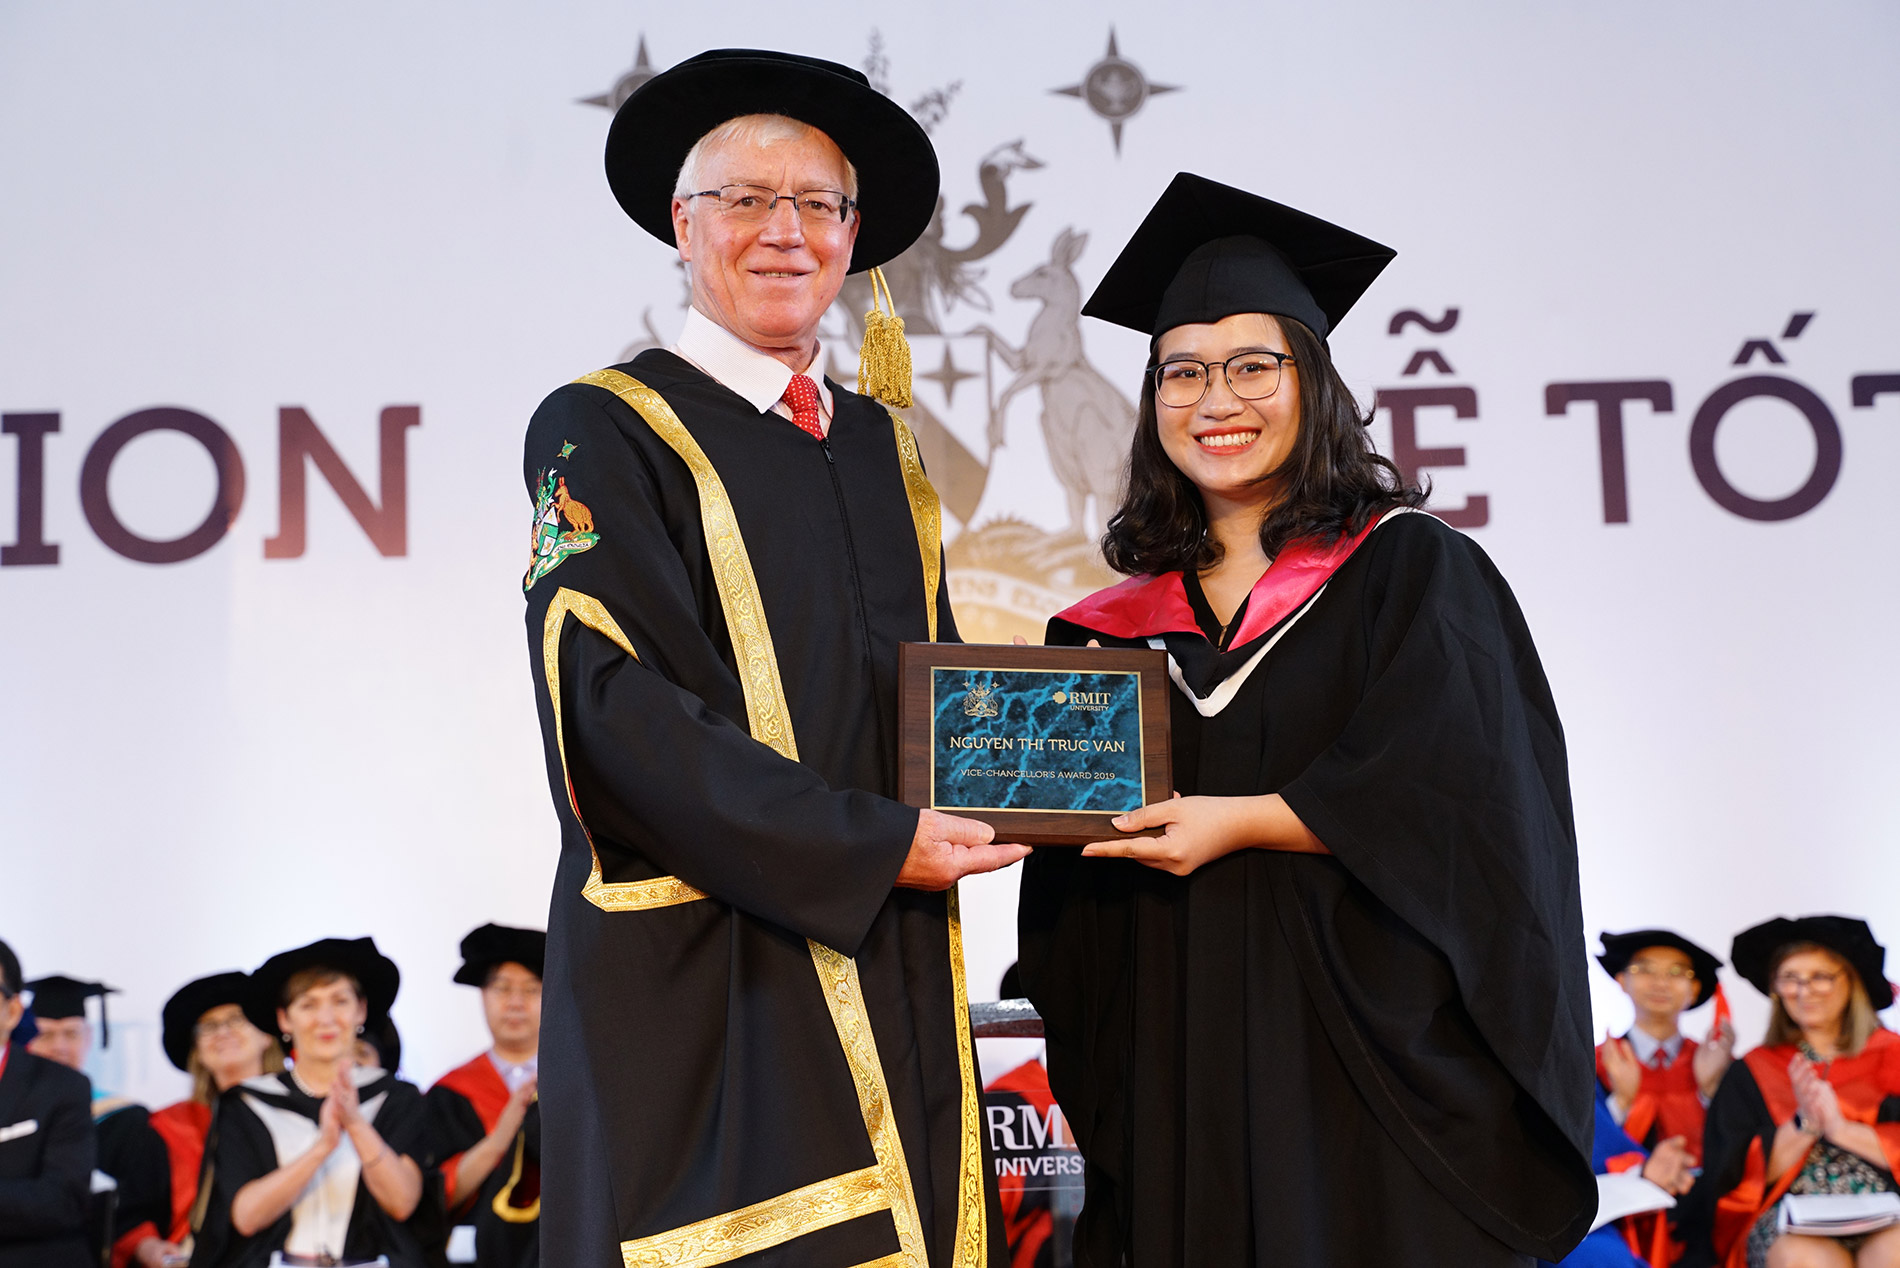 Chủ tịch Đại học RMIT Việt Nam Giáo sư Peter Coloe trao giải Sinh viên Xuất sắc cơ sở Nam Sài Gòn cho Nguyễn Thị Trúc Vân. 